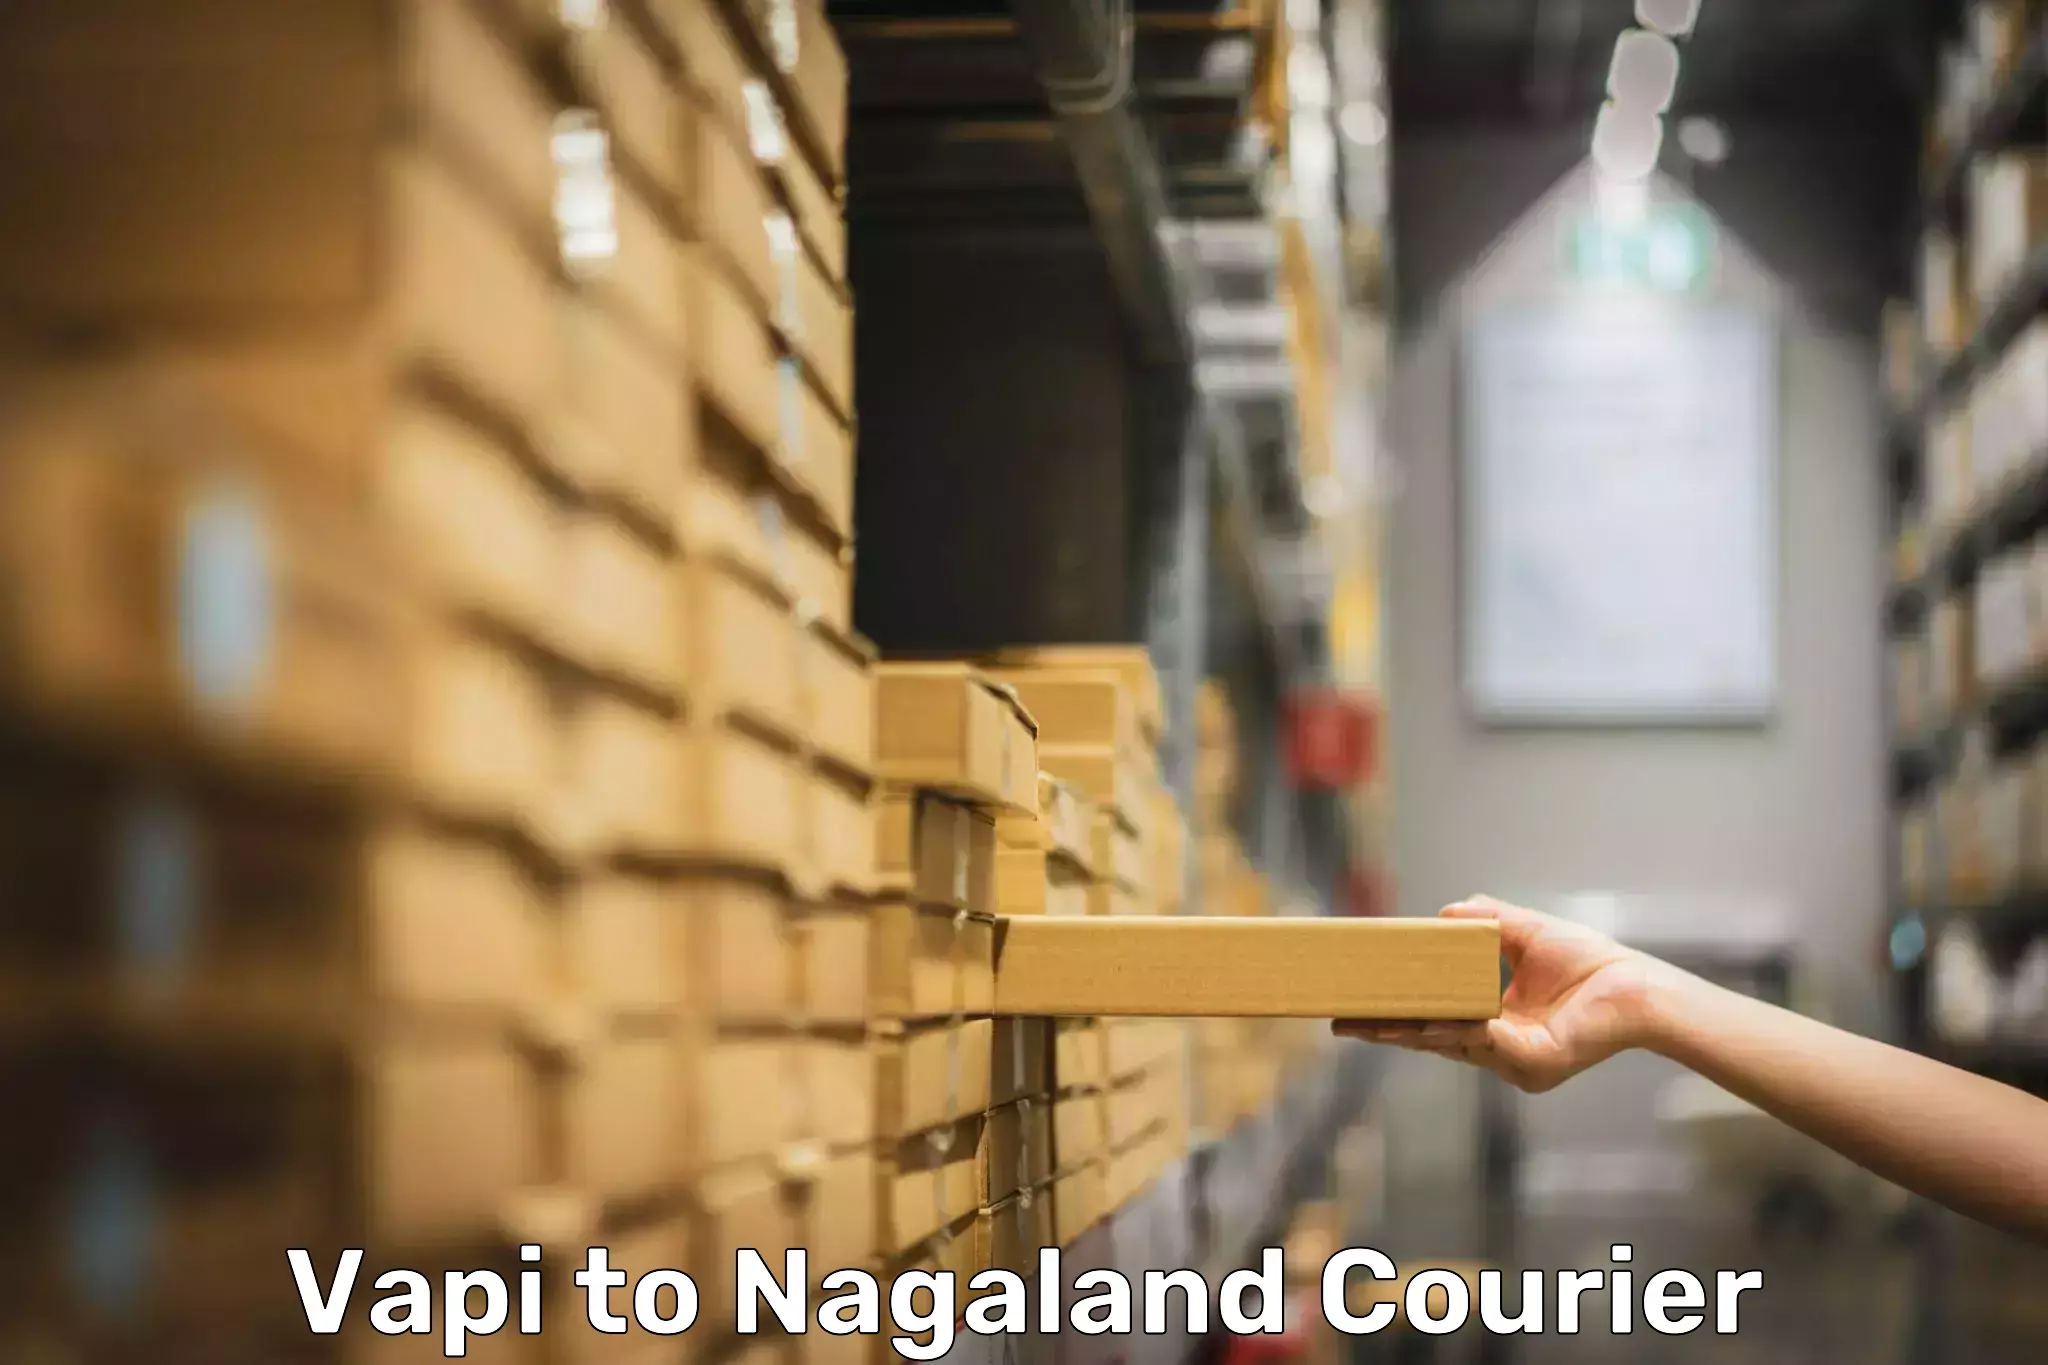 Door-to-door baggage service Vapi to Nagaland